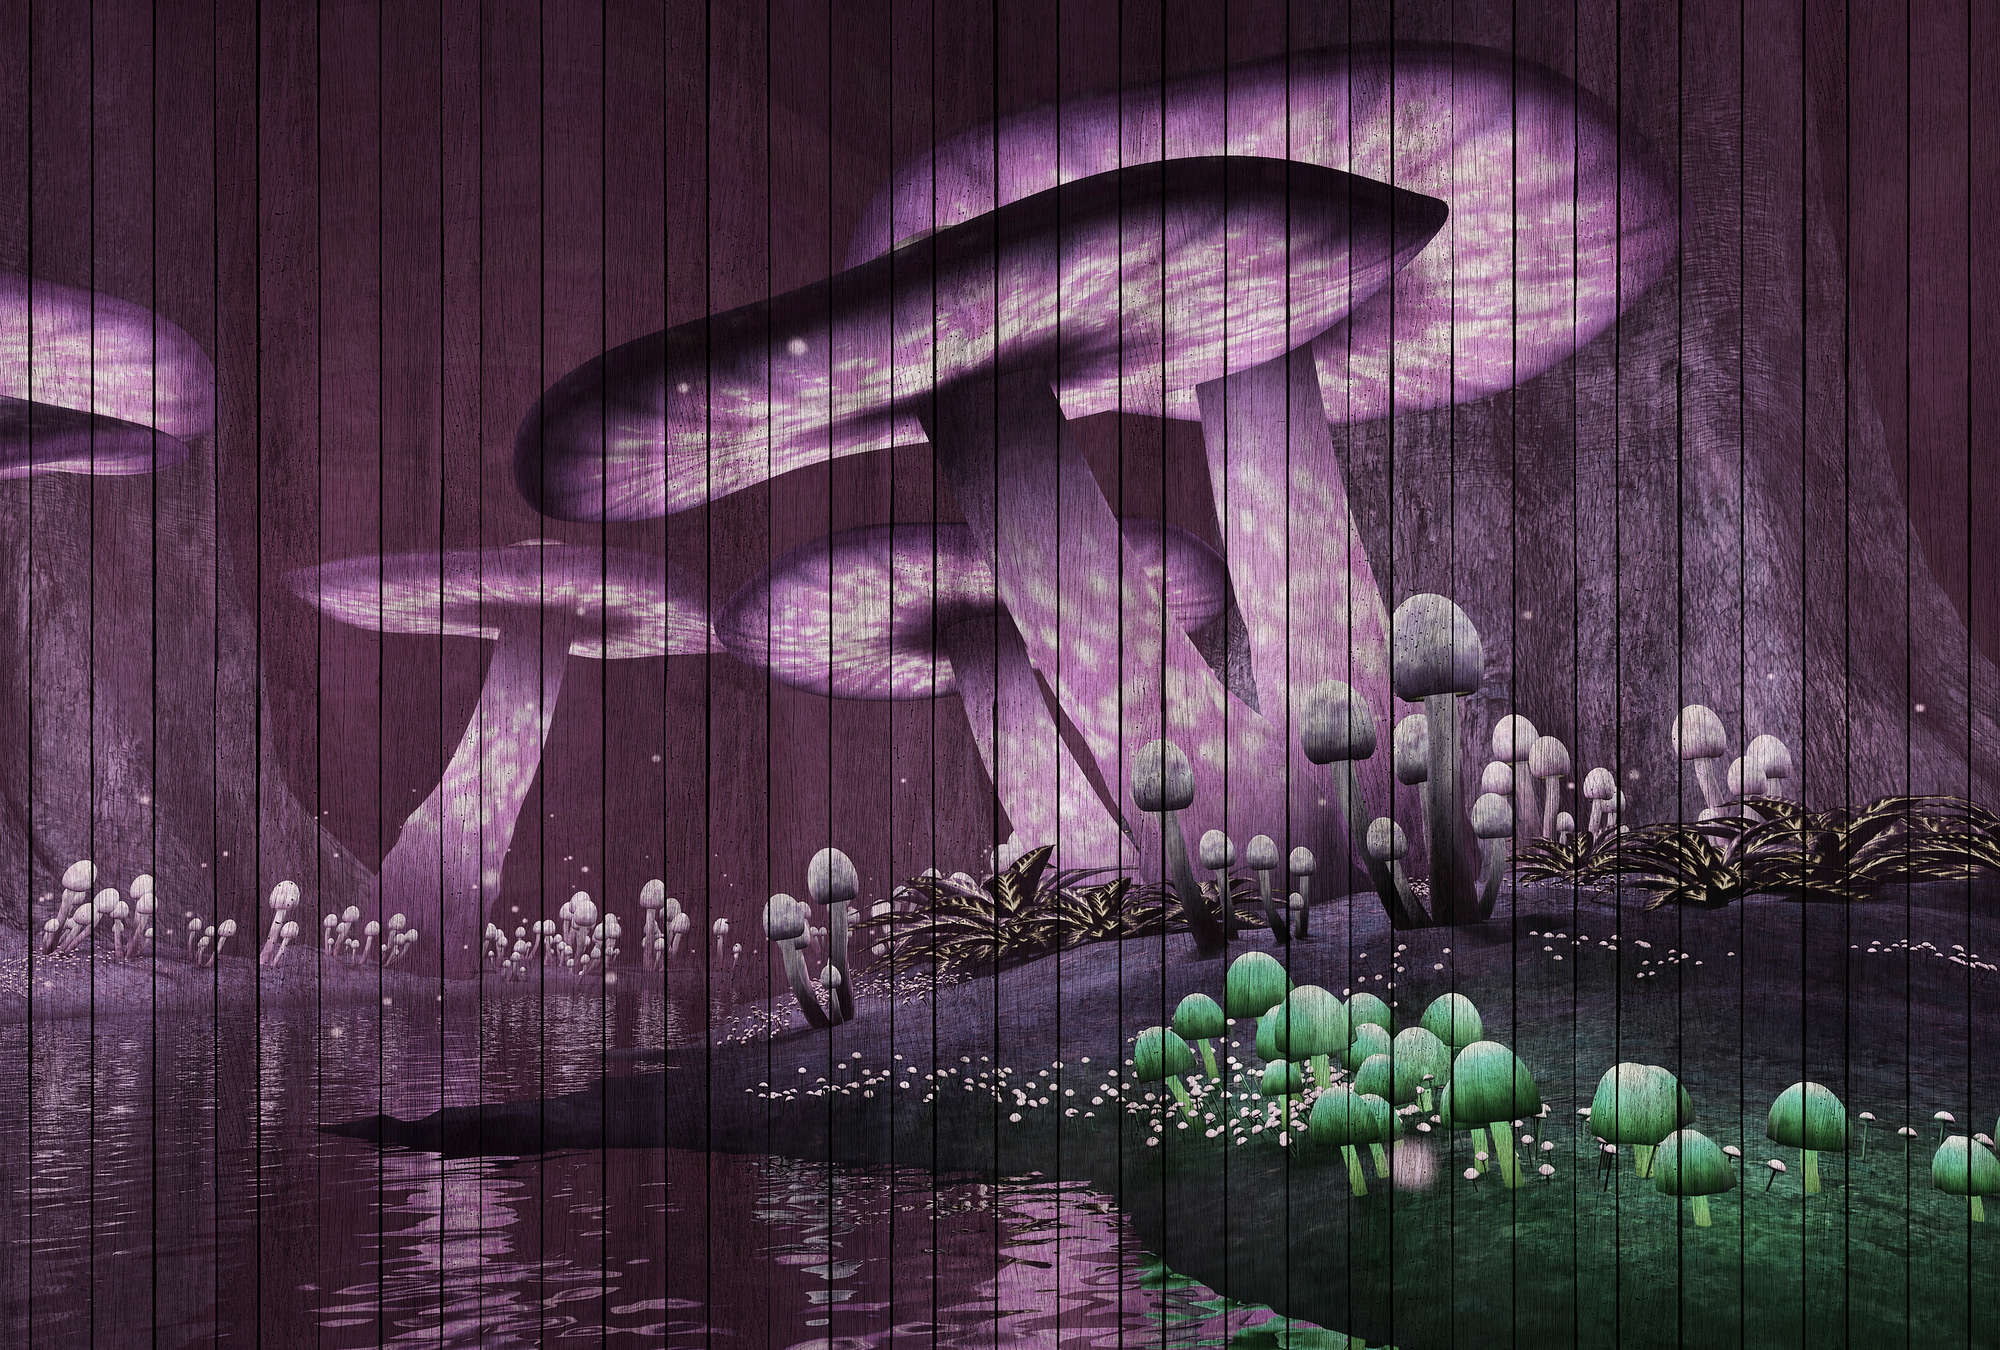             Fantasy 2 - Fototapete magischer Wald mit Holzpaneele Struktur – Grün, Violett | Perlmutt Glattvlies
        